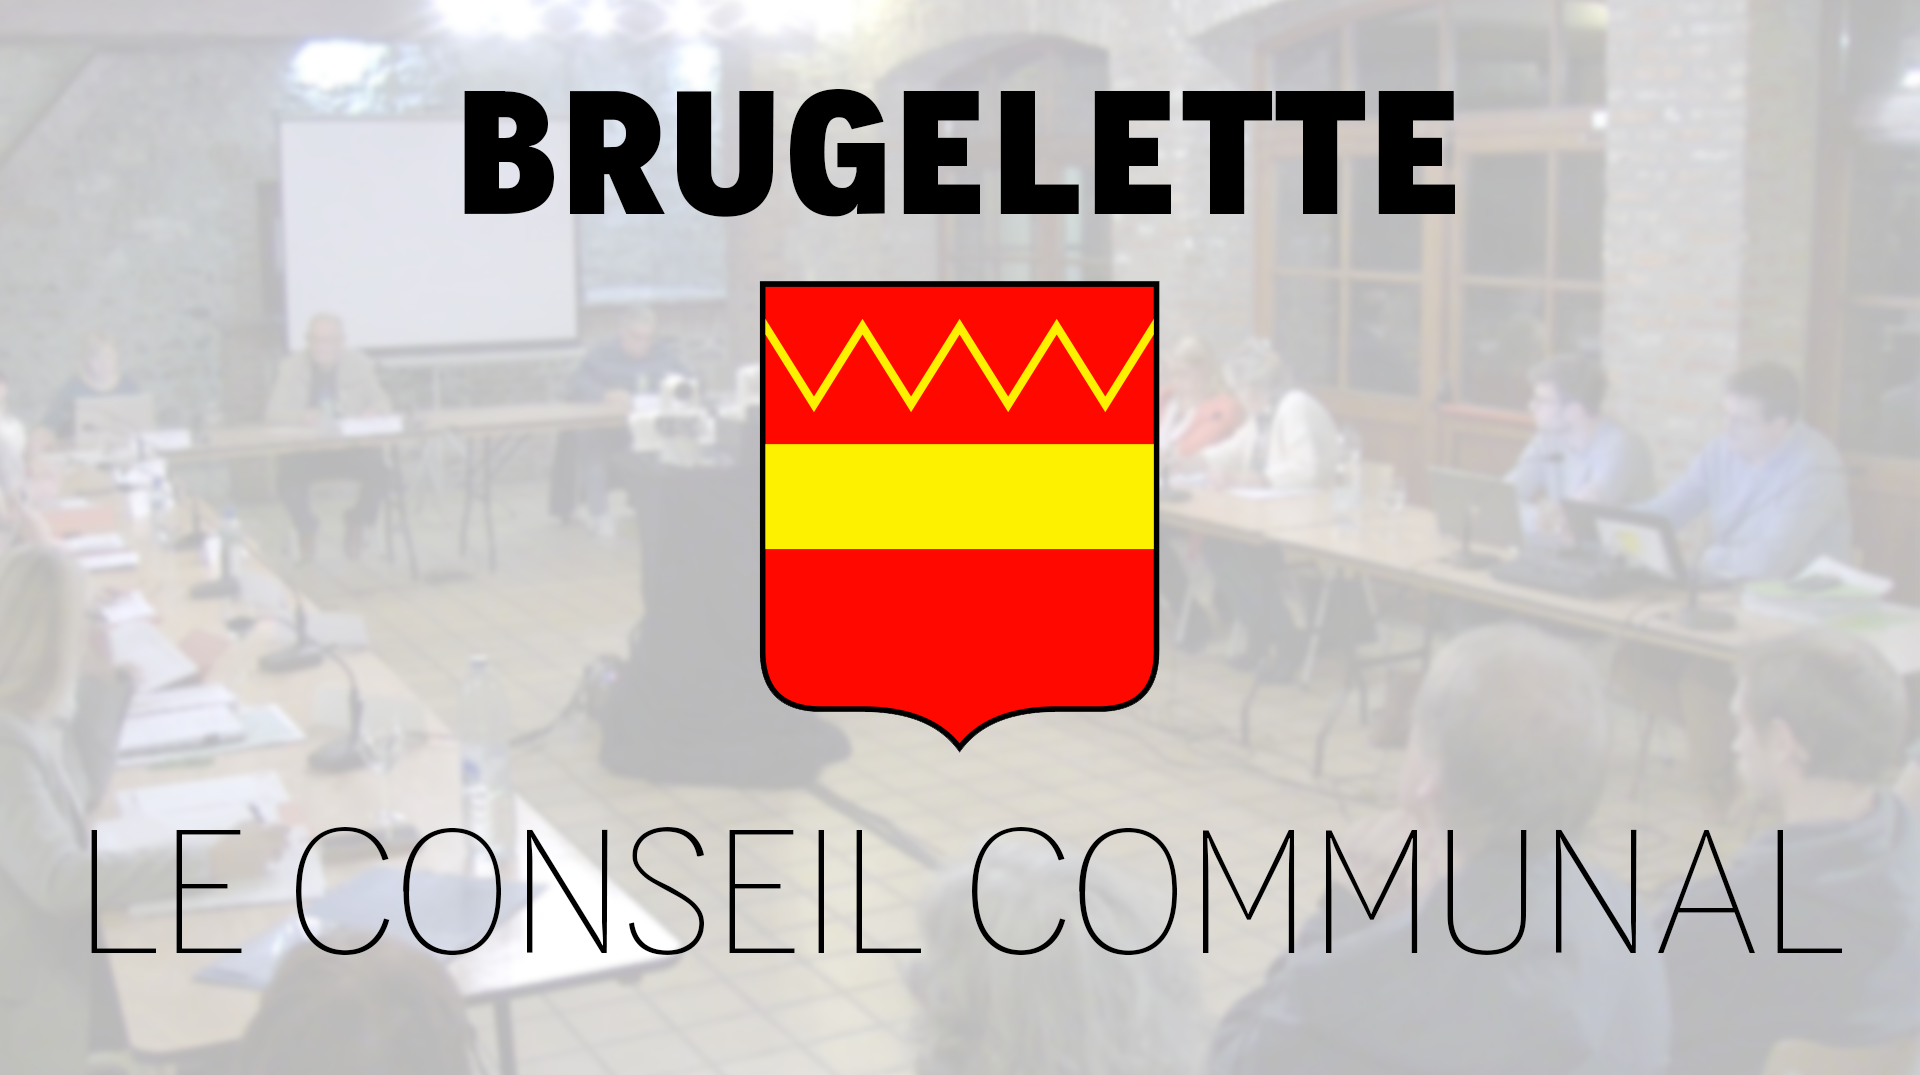 Le conseil communal de Brugelette